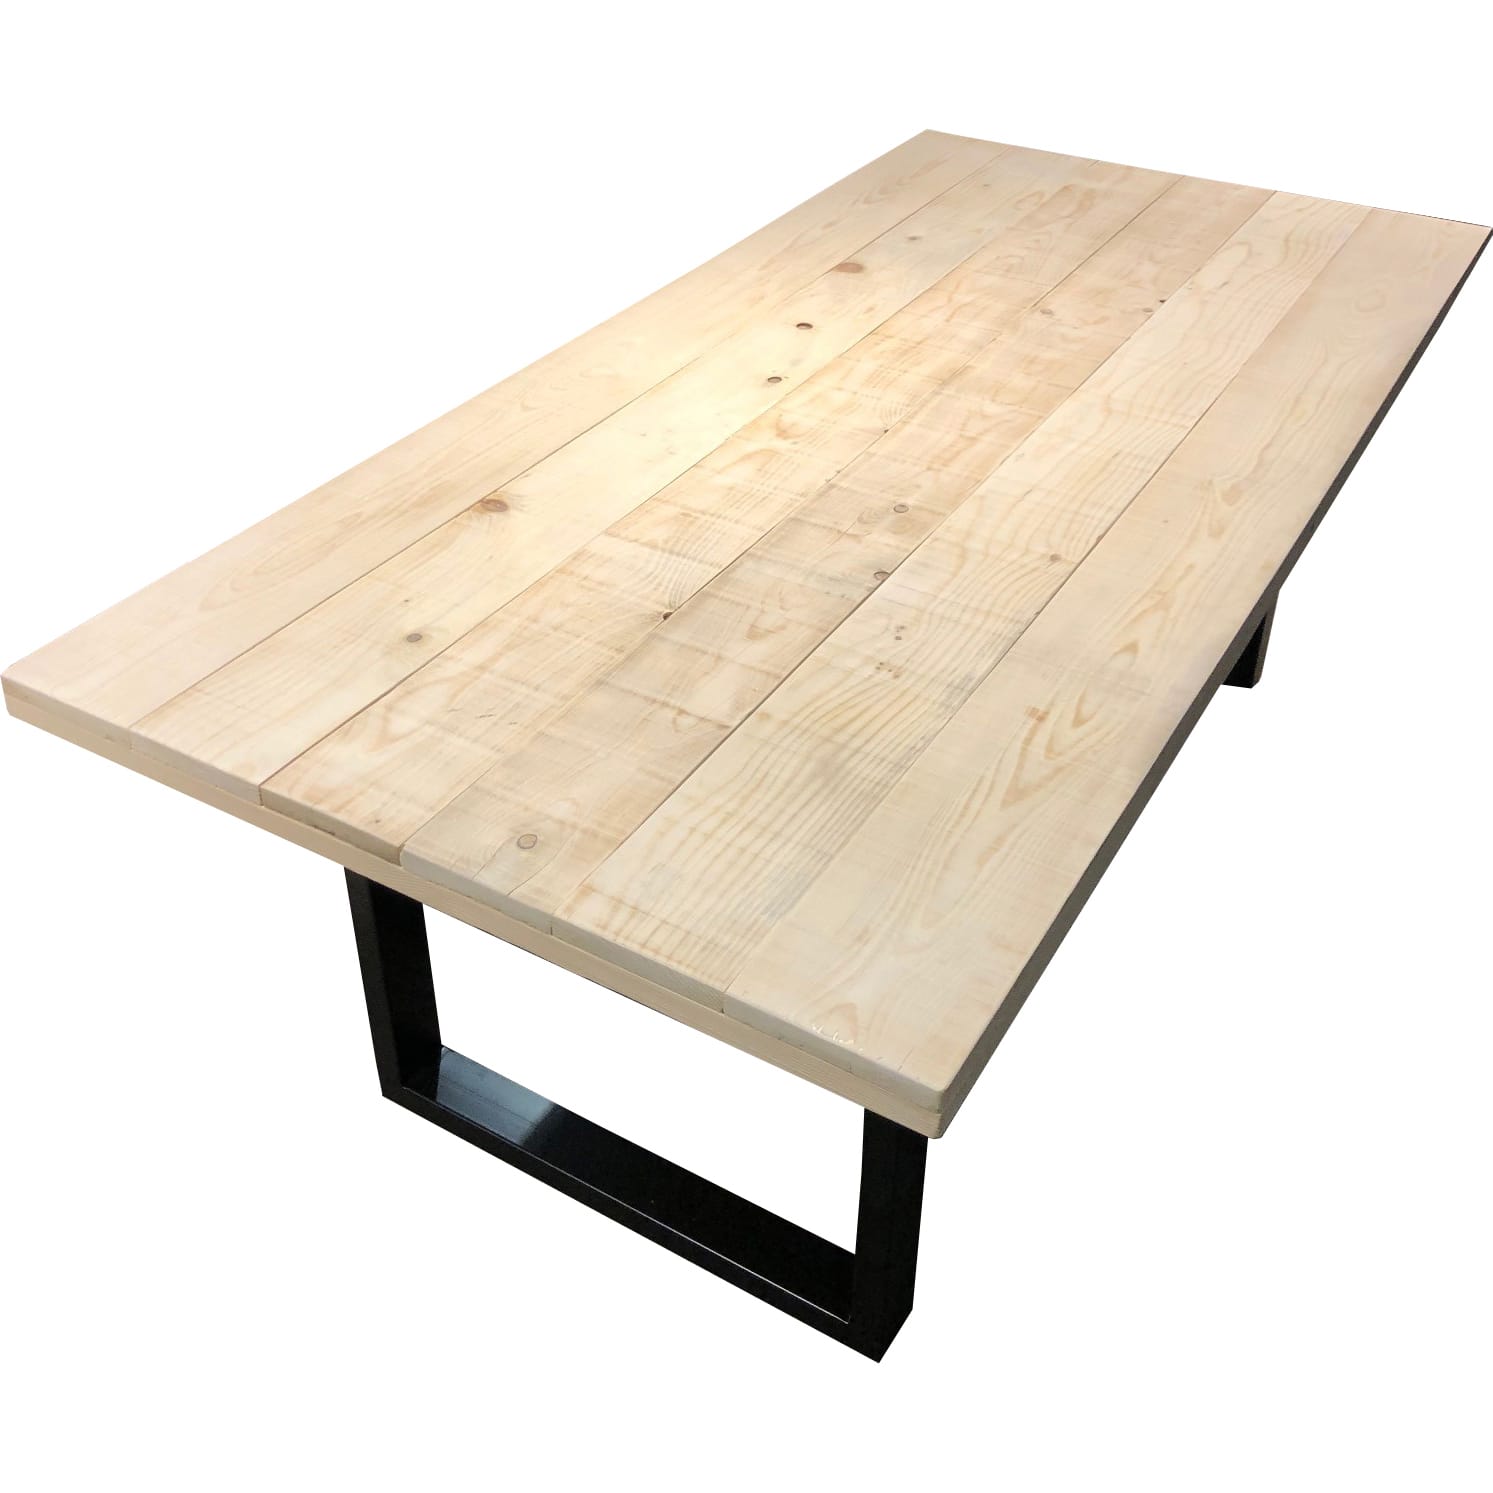 Tisch Mango natur antikschwarz 200x100 | Designtische | | | Möbel Tische mutoni Esstische möbel 